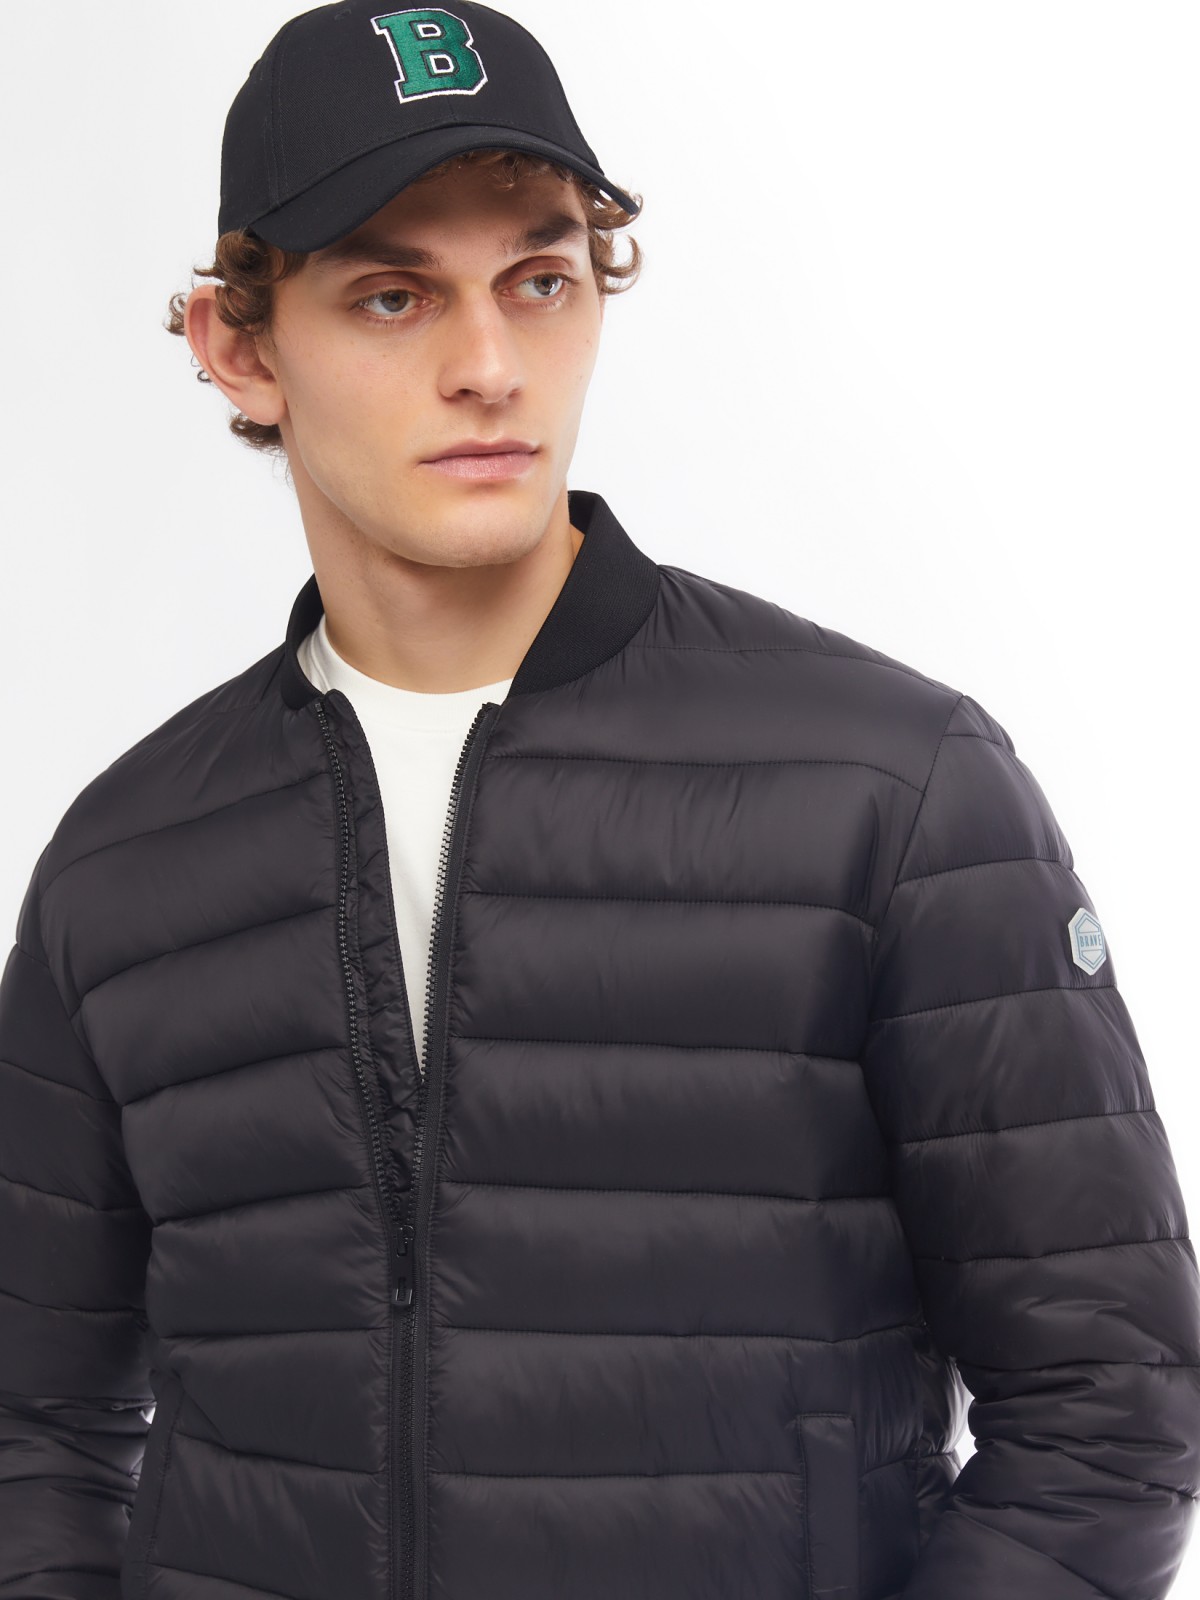 Лёгкая утеплённая куртка-бомбер с воротником-стойкой zolla 014125102094, цвет черный, размер S - фото 4